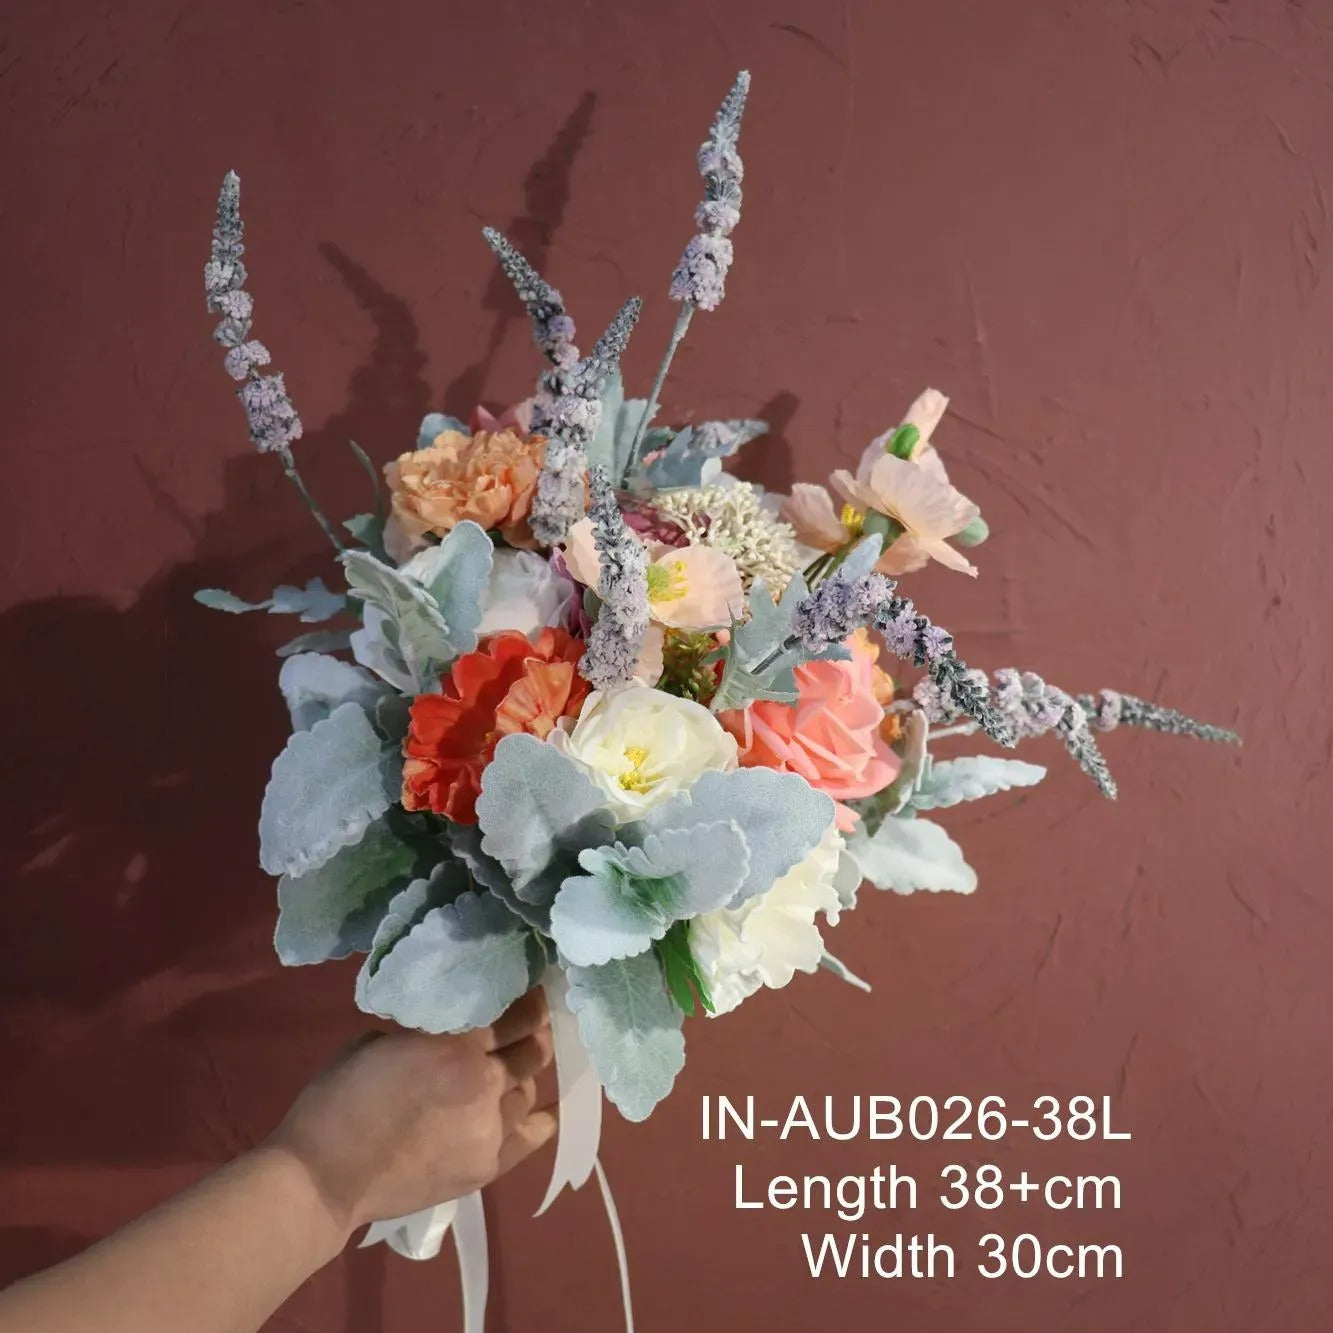 Lavender Love - Bouquets (3 sizes)(NEW)